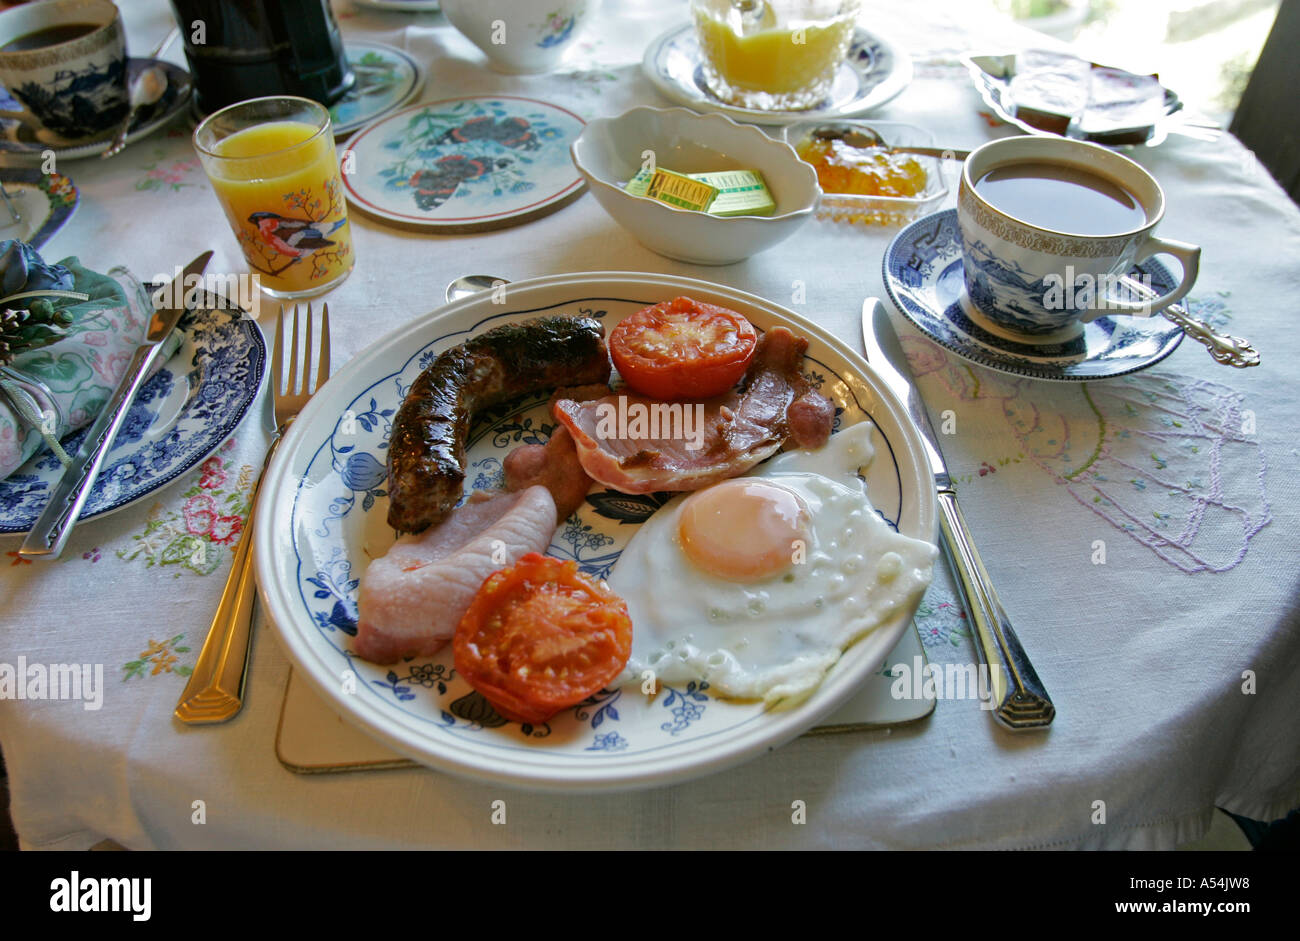 Crook, GBR, 21. Agosto 2005 - Una tipica prima colazione inglese. Foto Stock